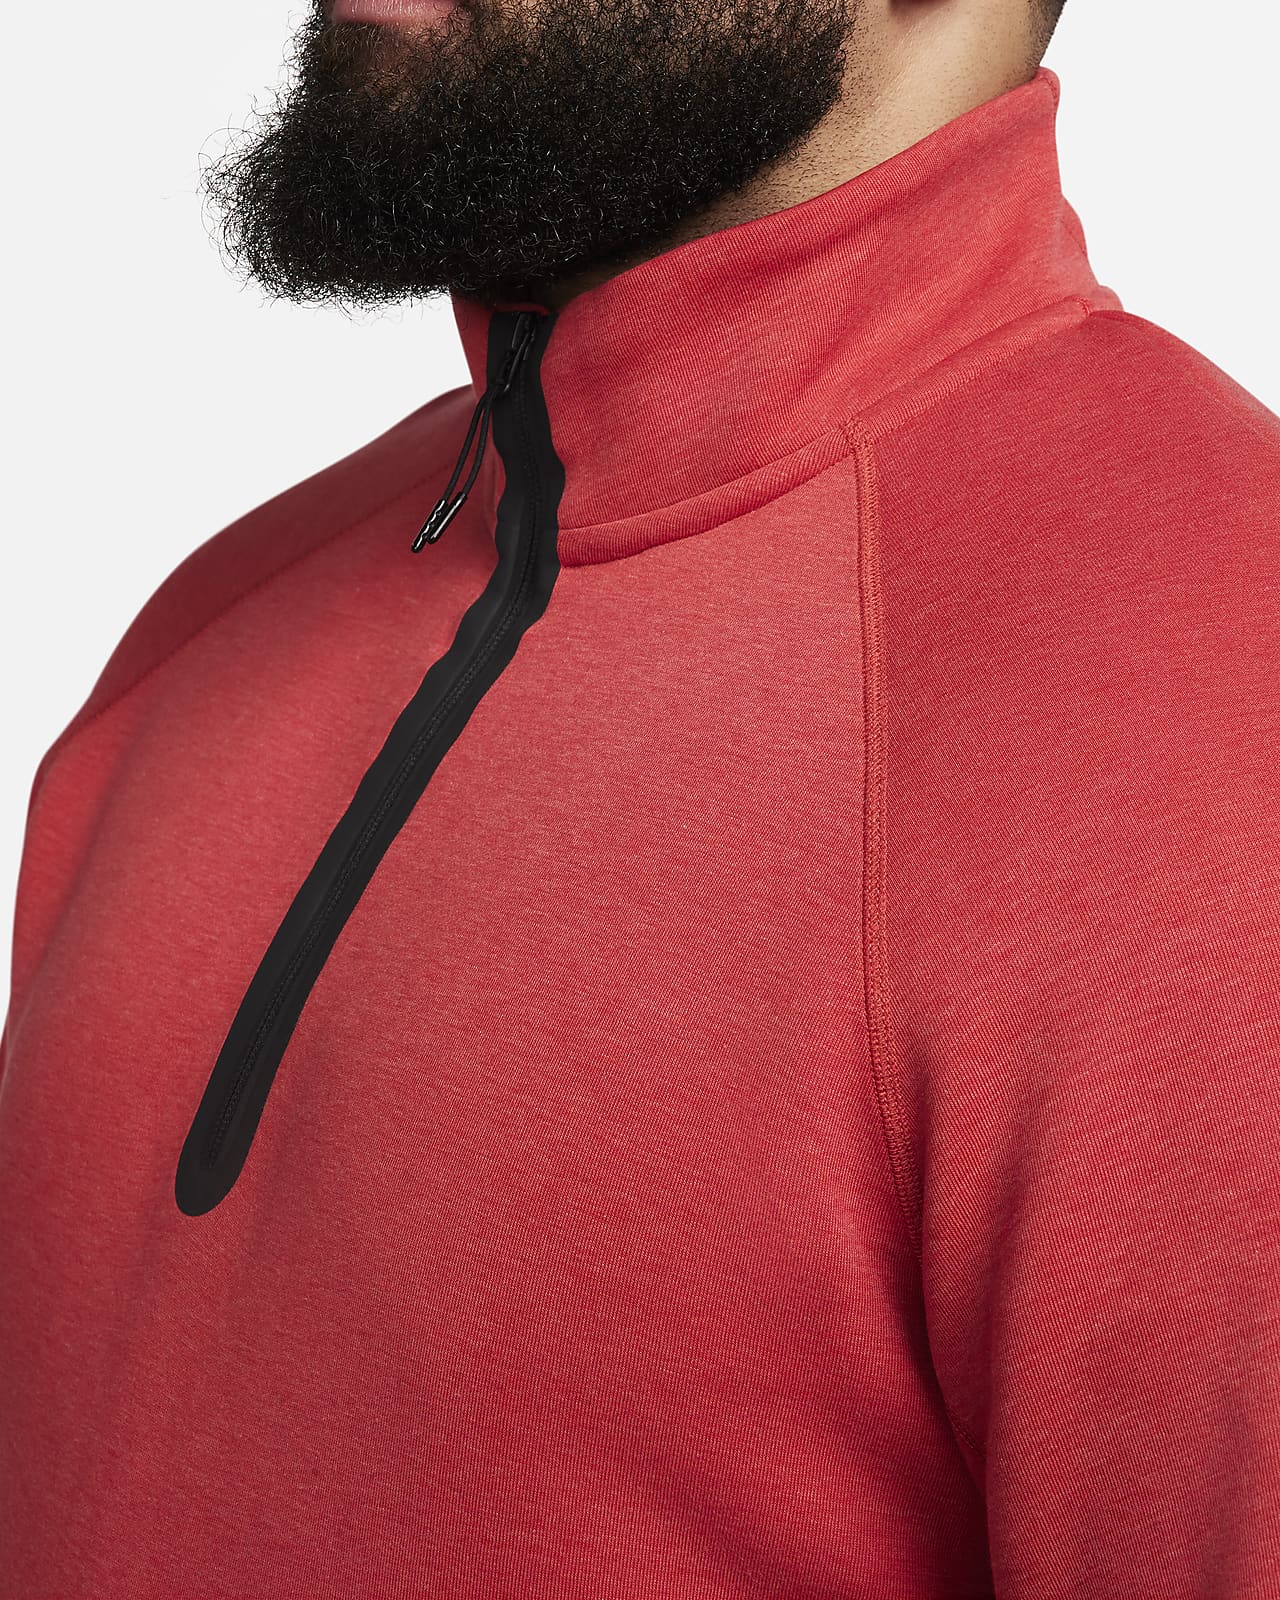 Men's Signature Quarter-Zip Sweatshirt | Deep Forest | Size Large | Cotton/Polyester | Orvis